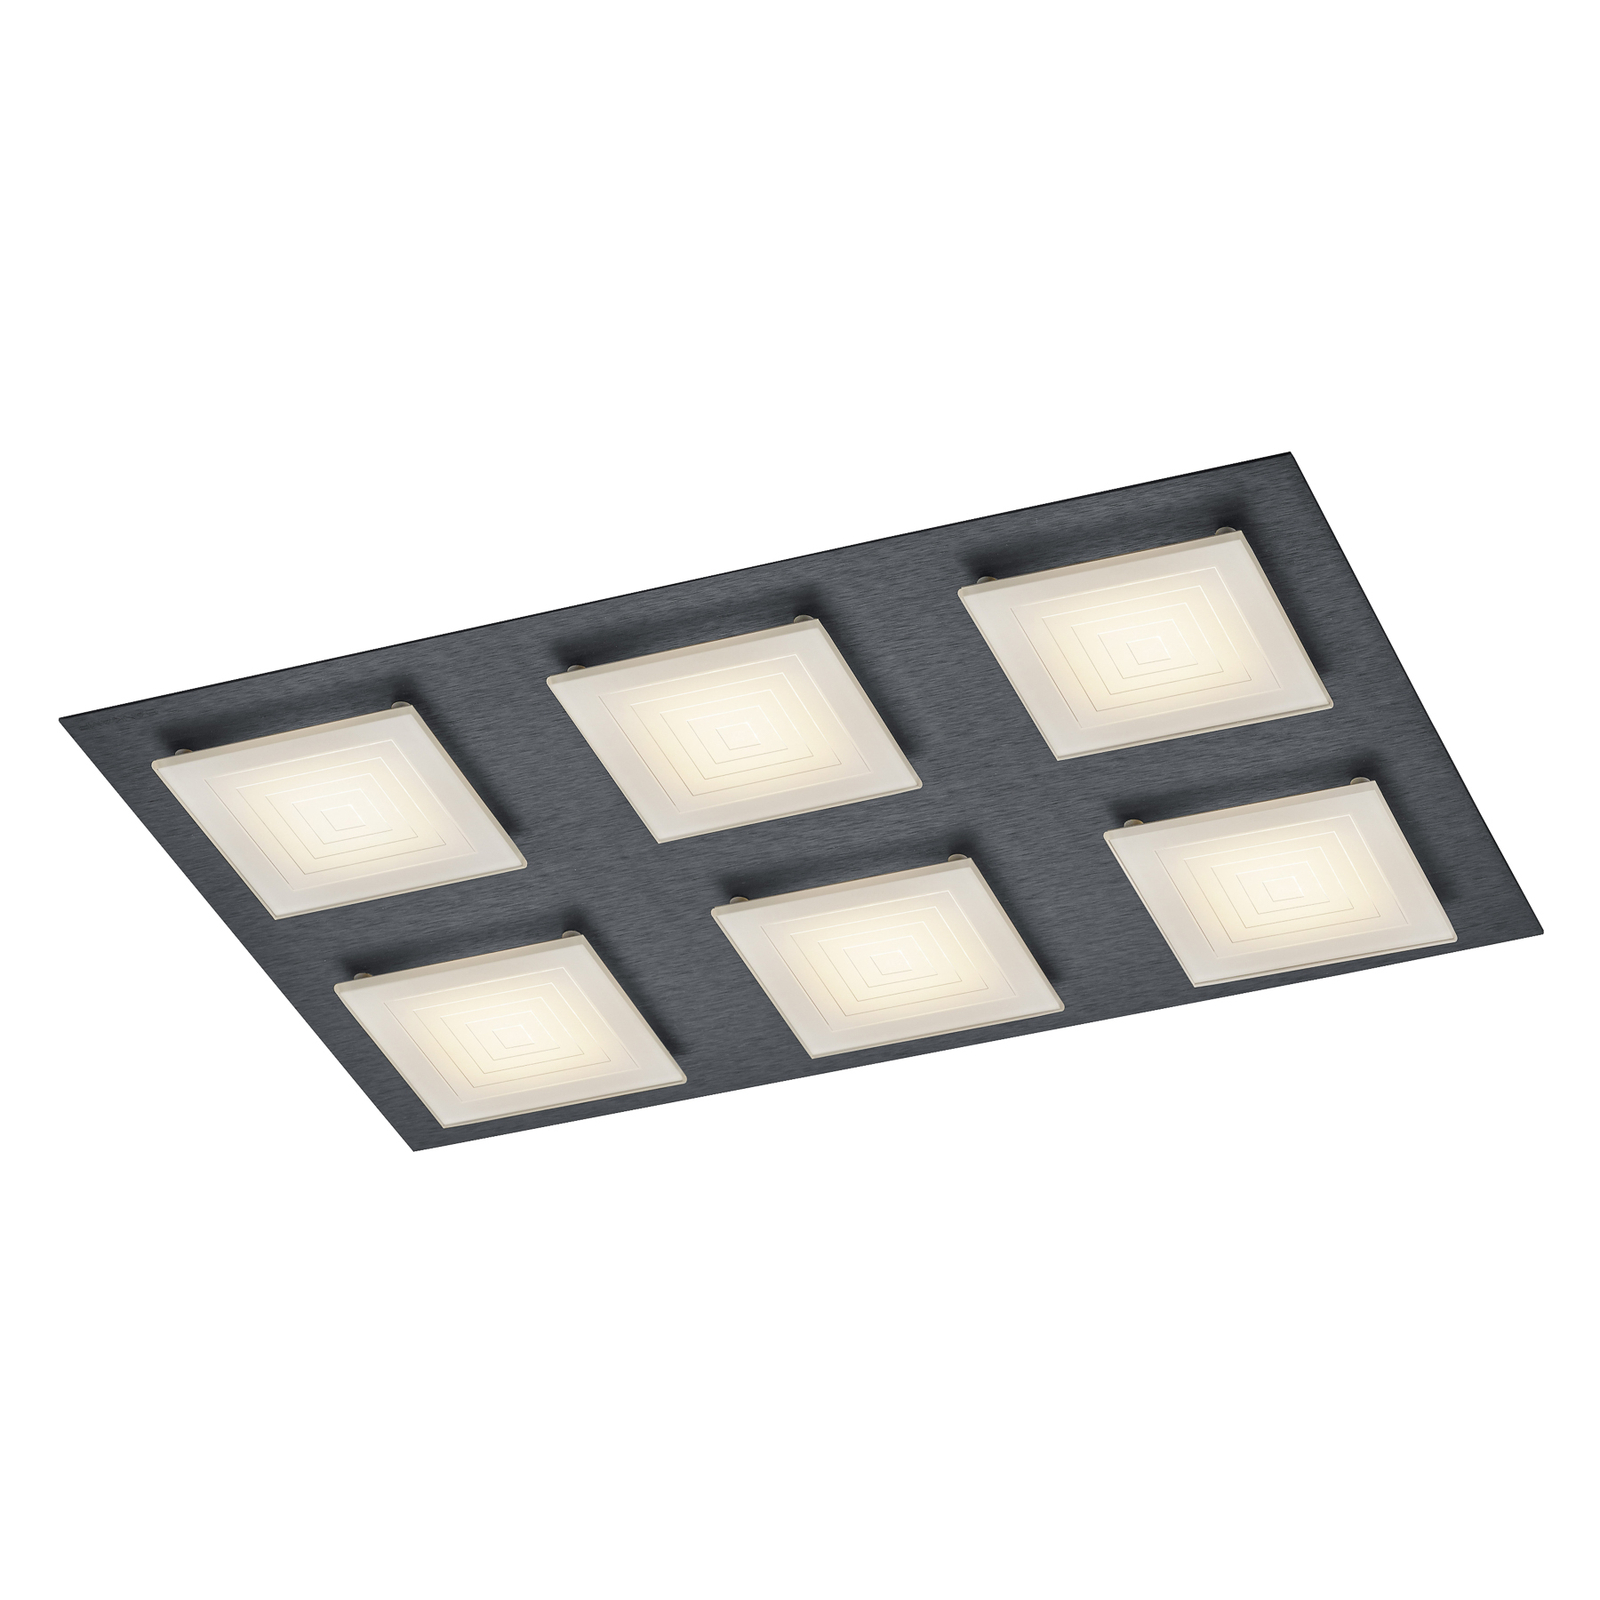 BANKAMP Ino LED ceiling light 6-bulb anthracite